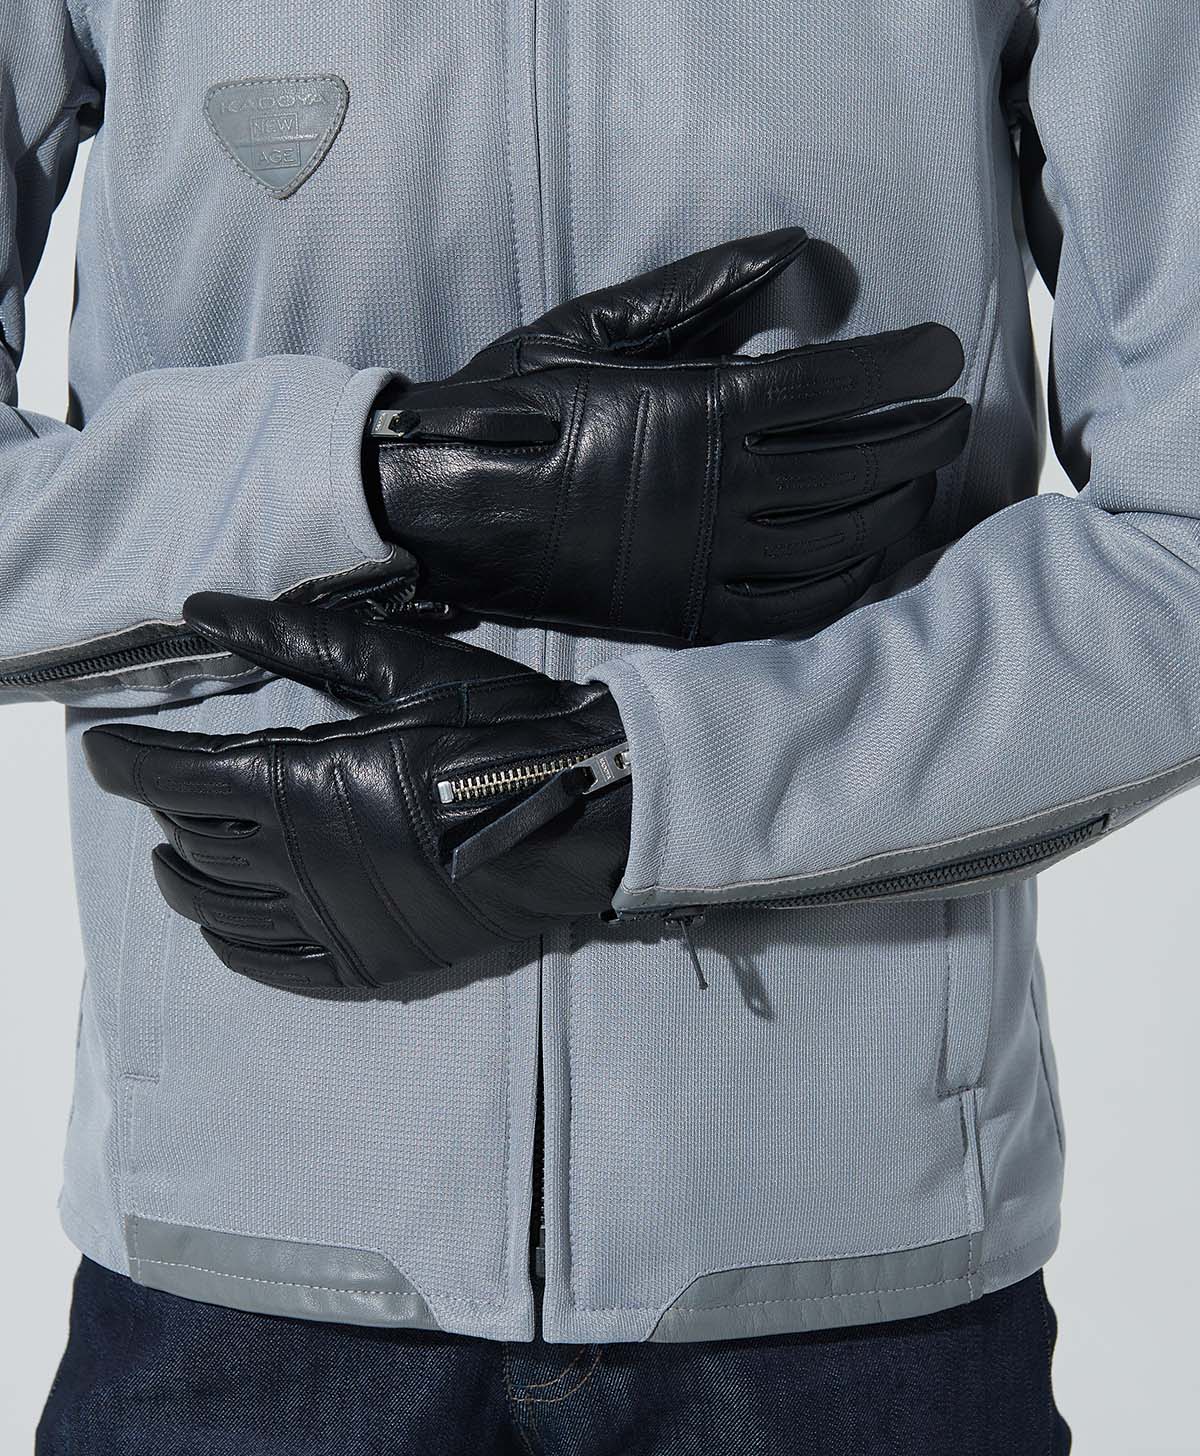 Rox Glove / Black (Women's)